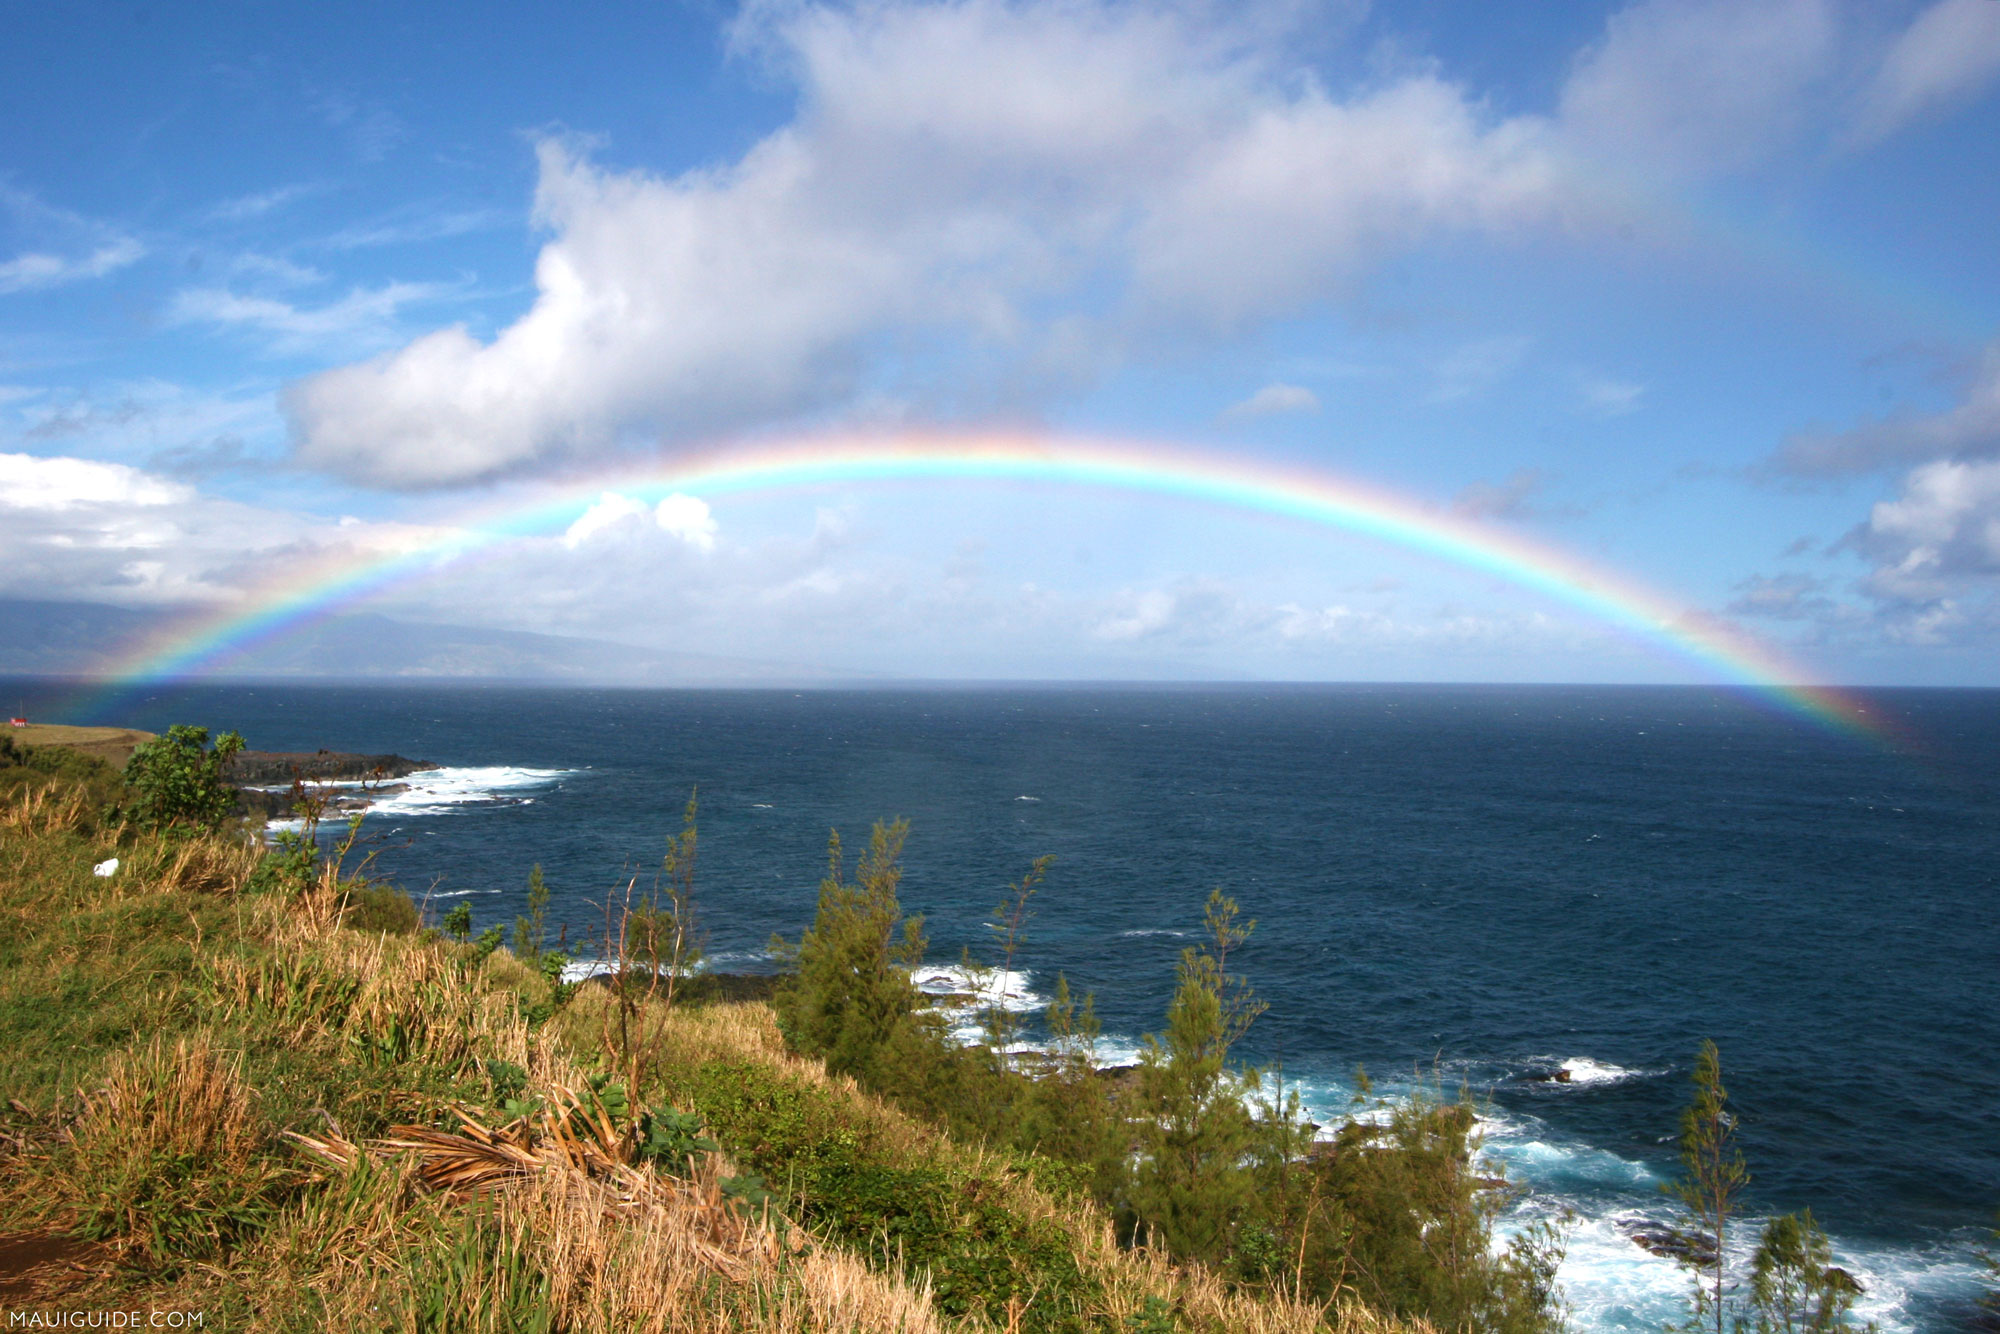 ハワイのマウイ島、カウアイ島、ハワイ島にもCOVID-19制限緩和を期待